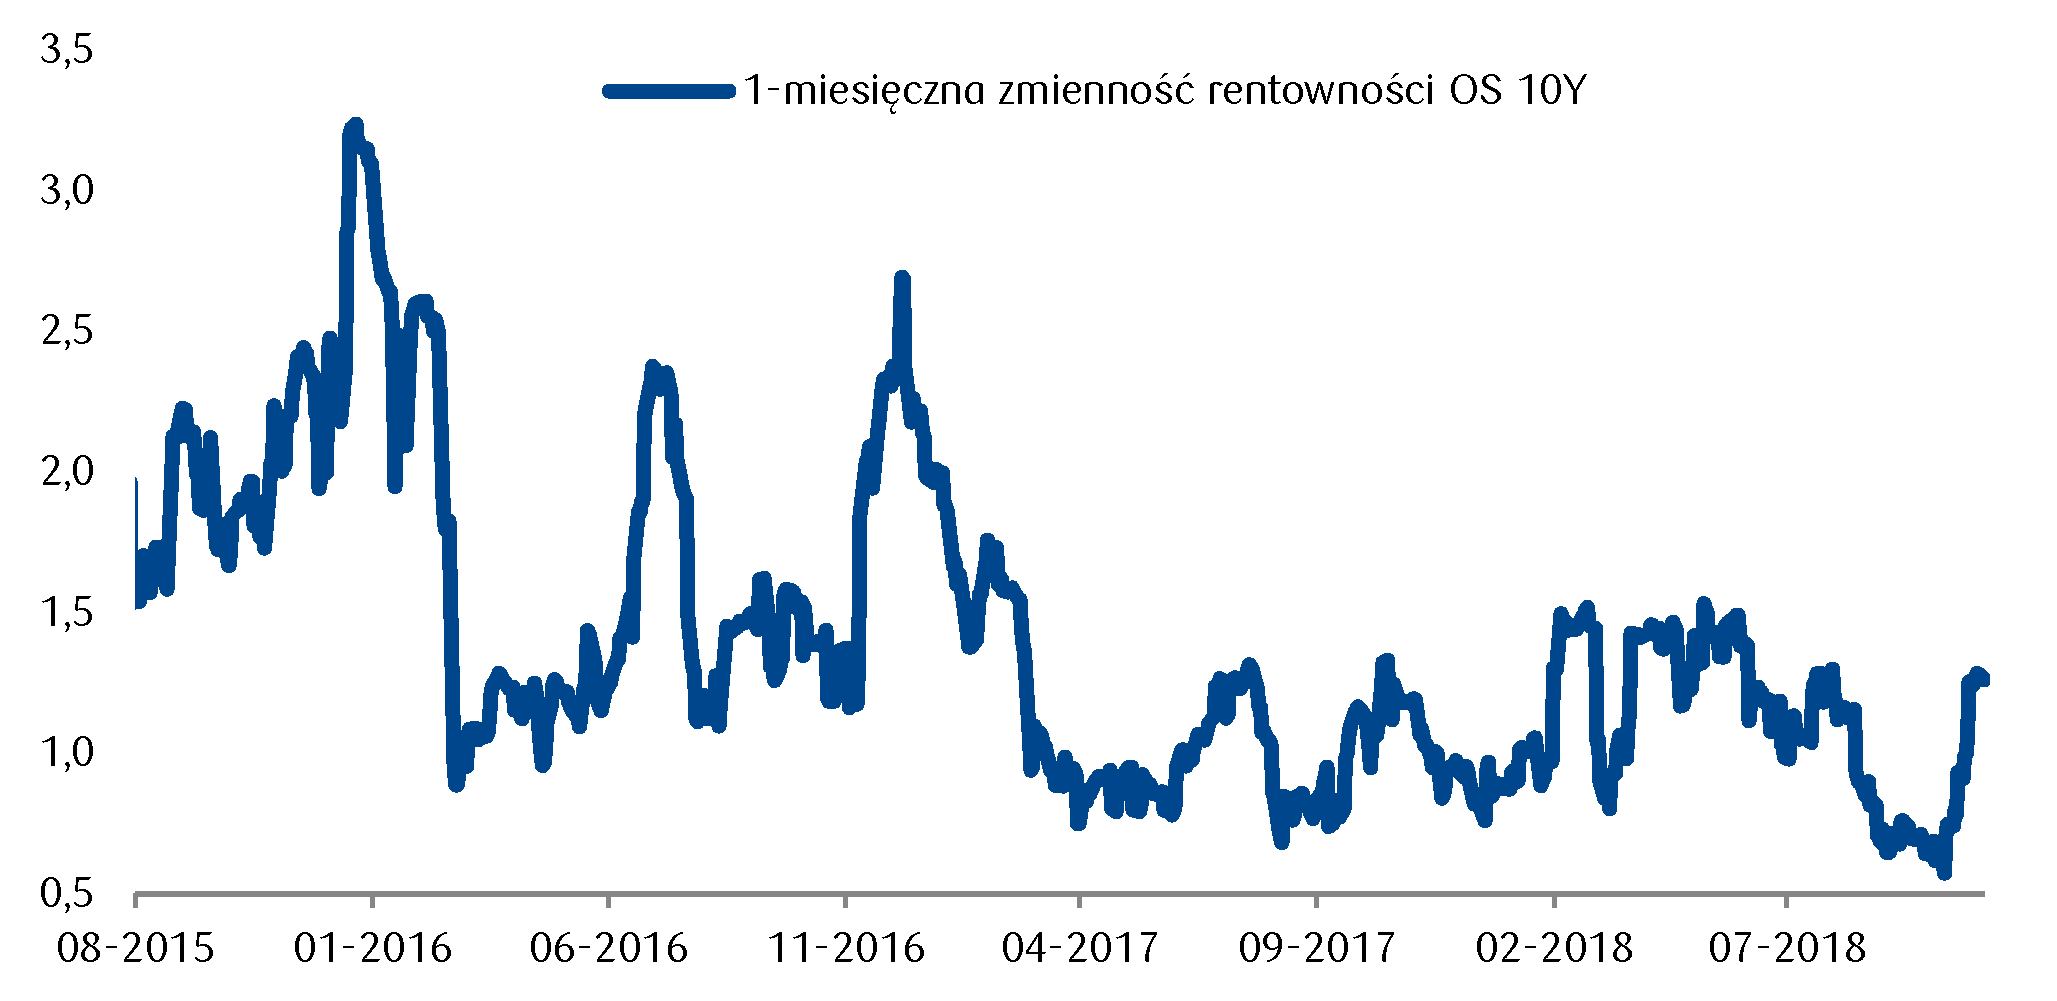 W ujęciu historycznym zmienność rentowności polskich obligacji pozostaje relatywnie niska